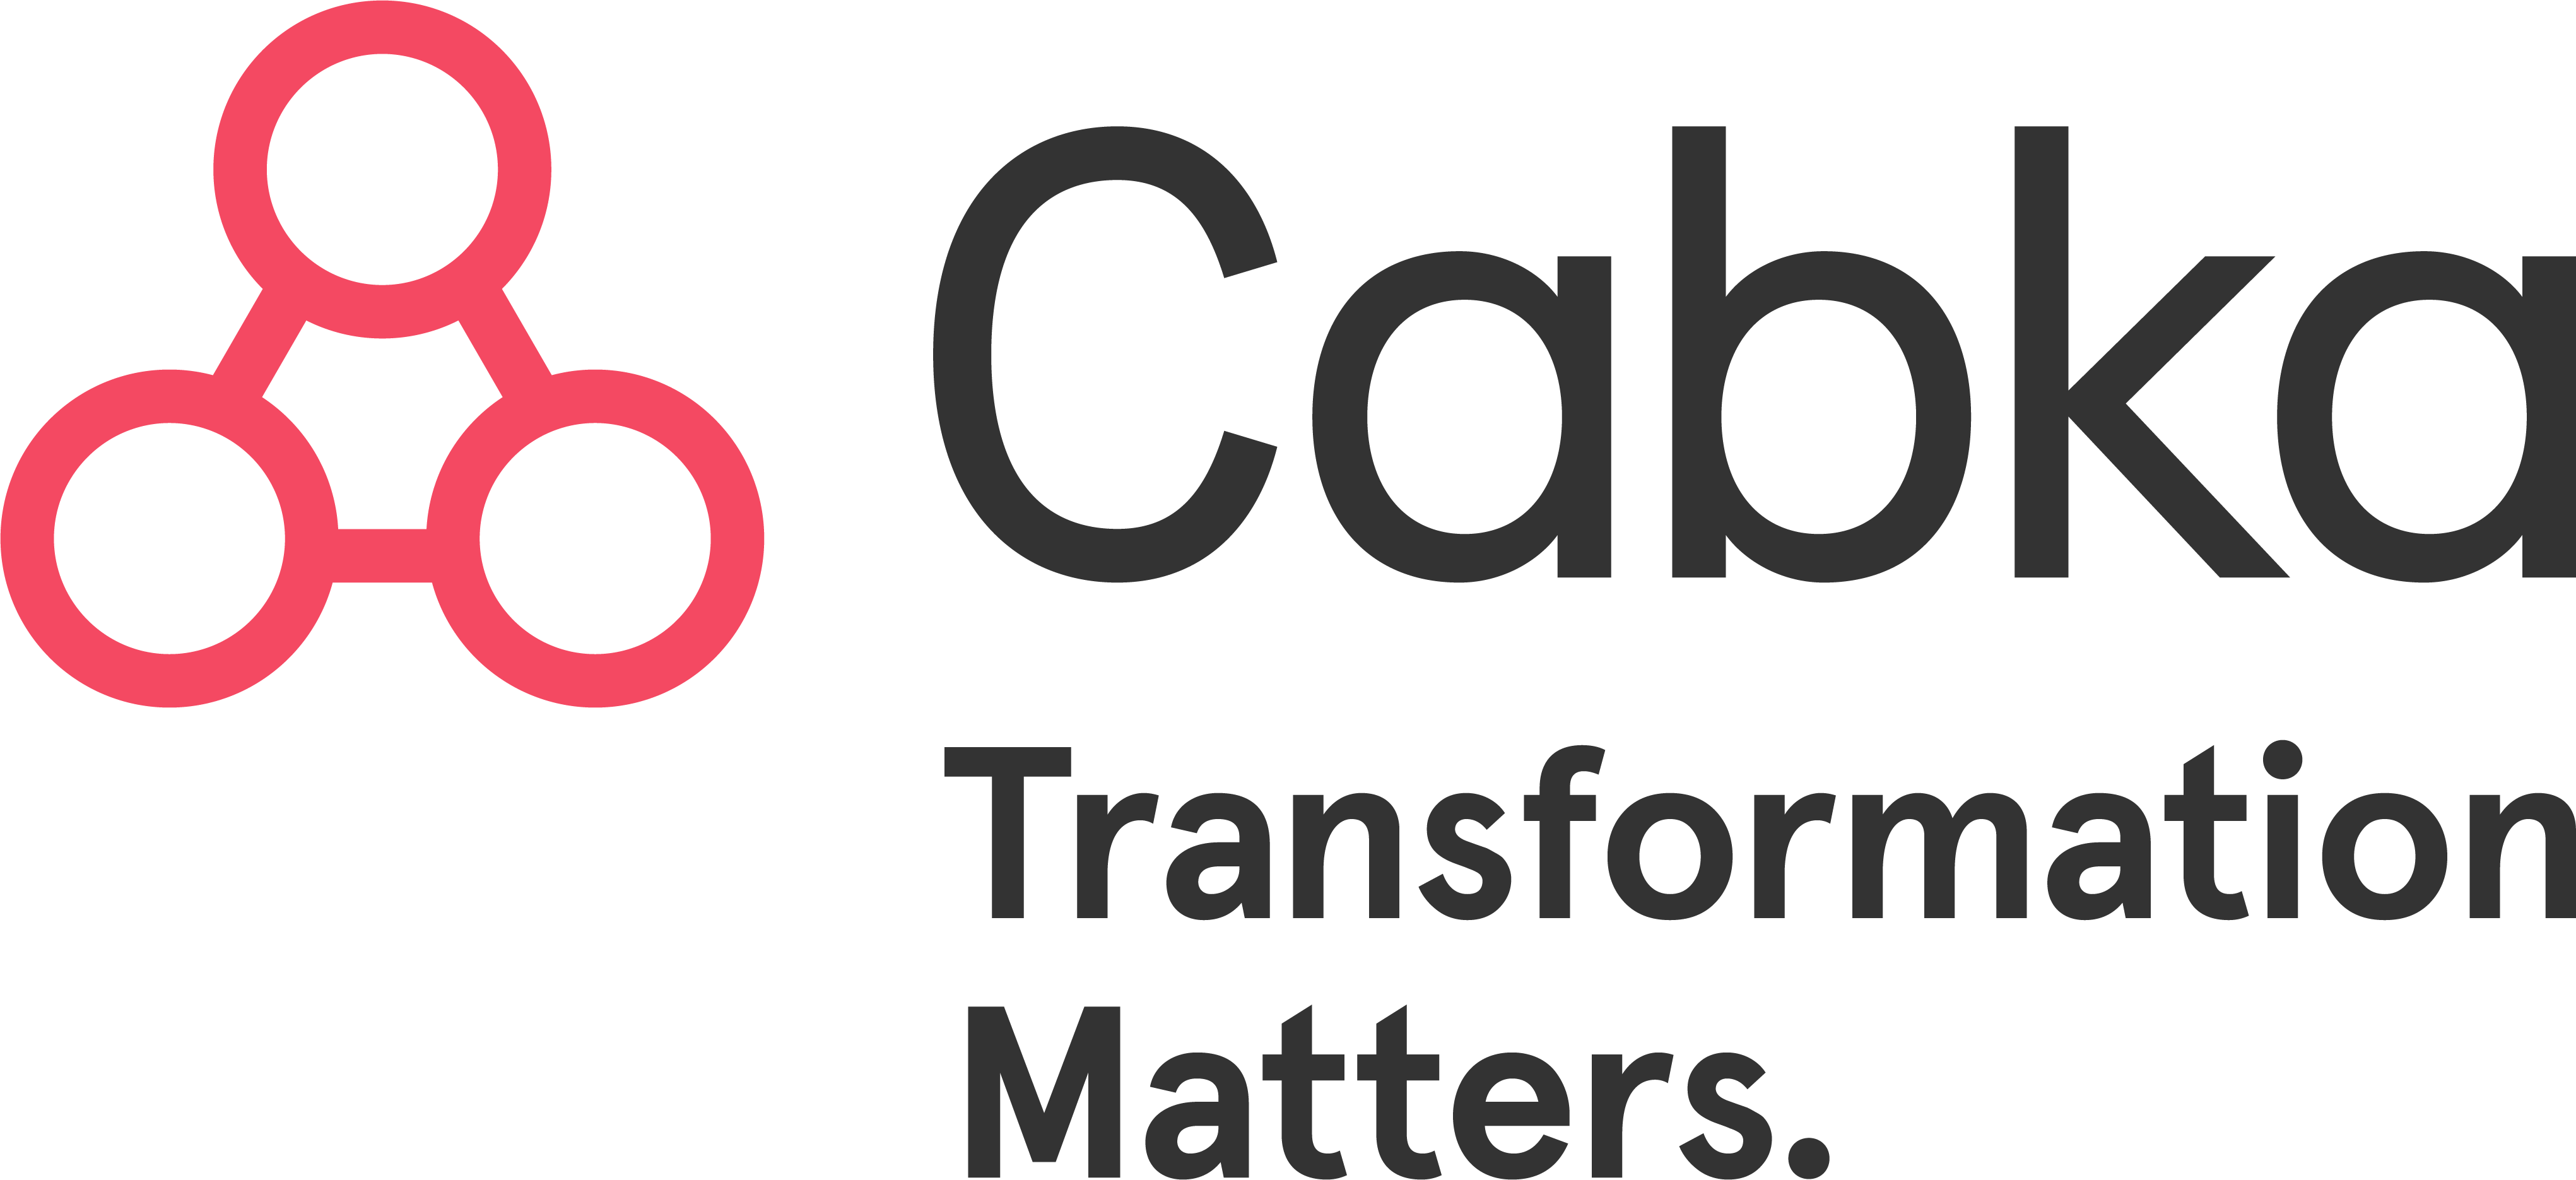 Cabka_Logo_Tagline1_RGB(1).png